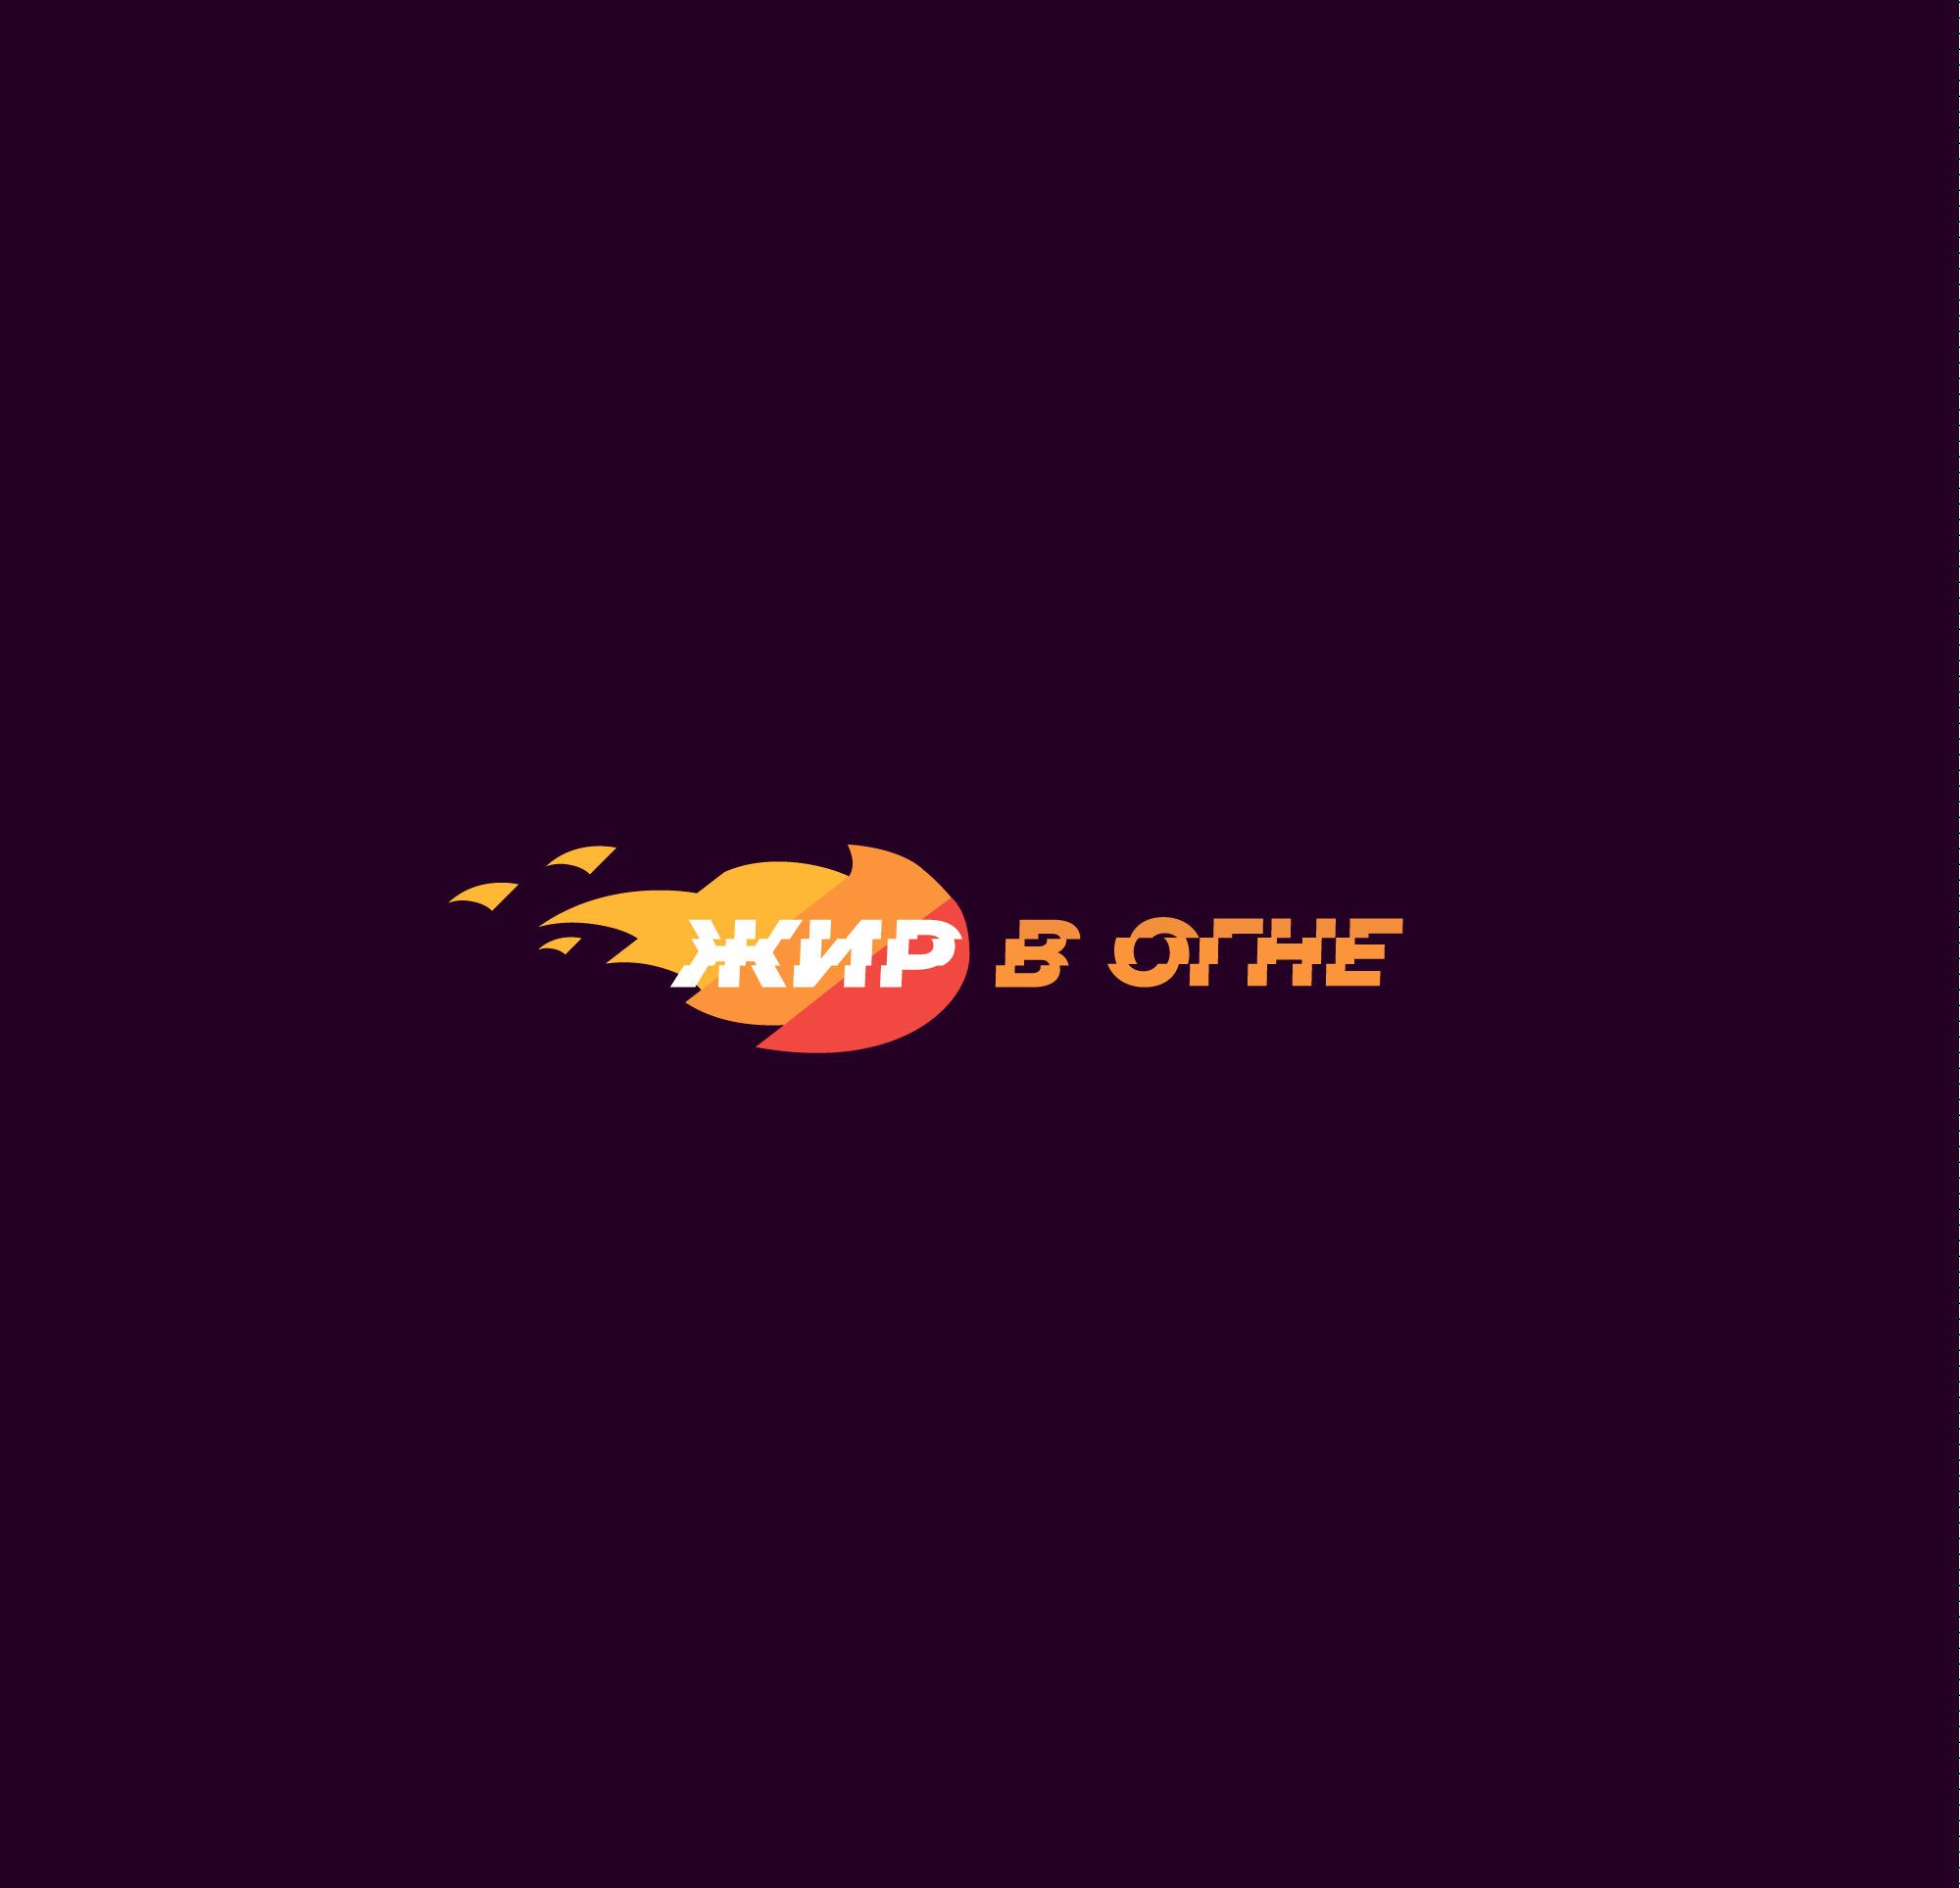 Логотип для Жир в огне - дизайнер Le_onik